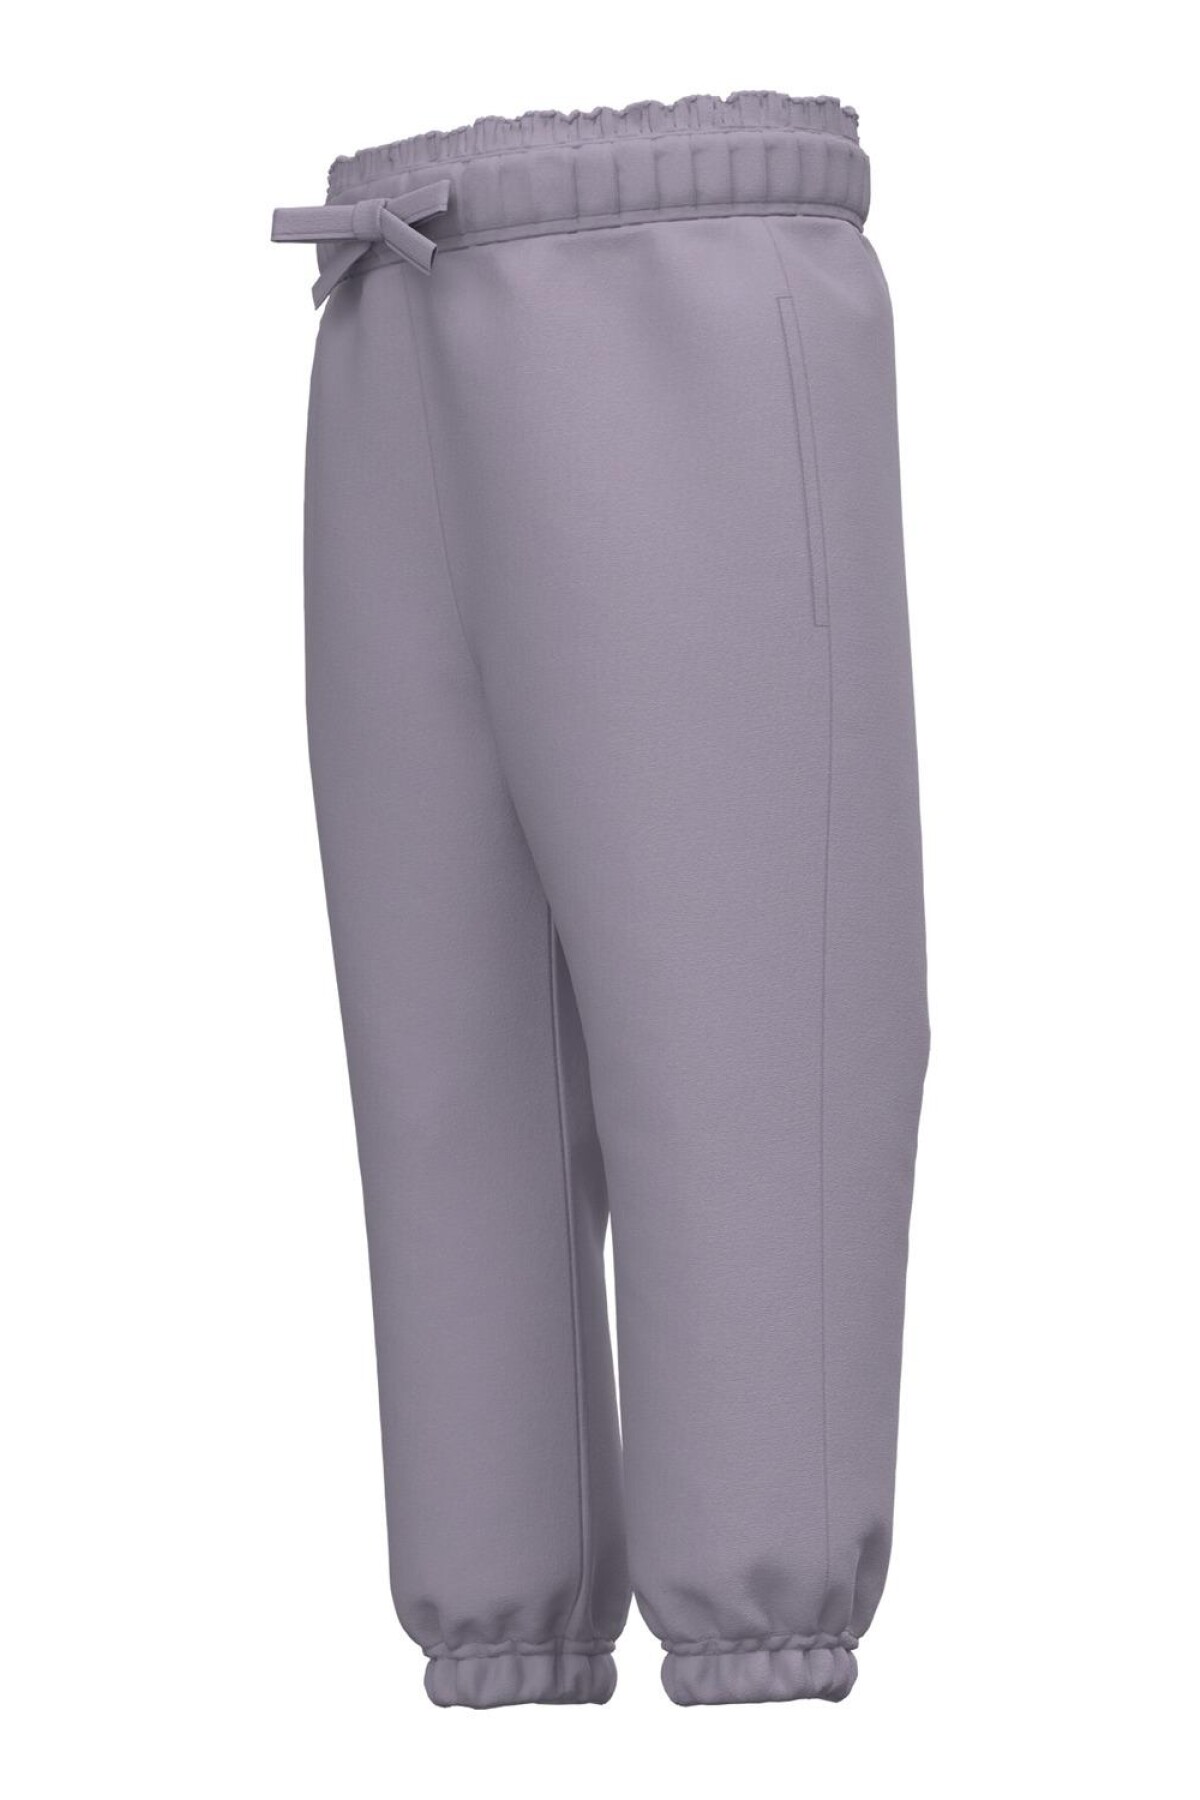 Pantalon Flis Lavender Gray